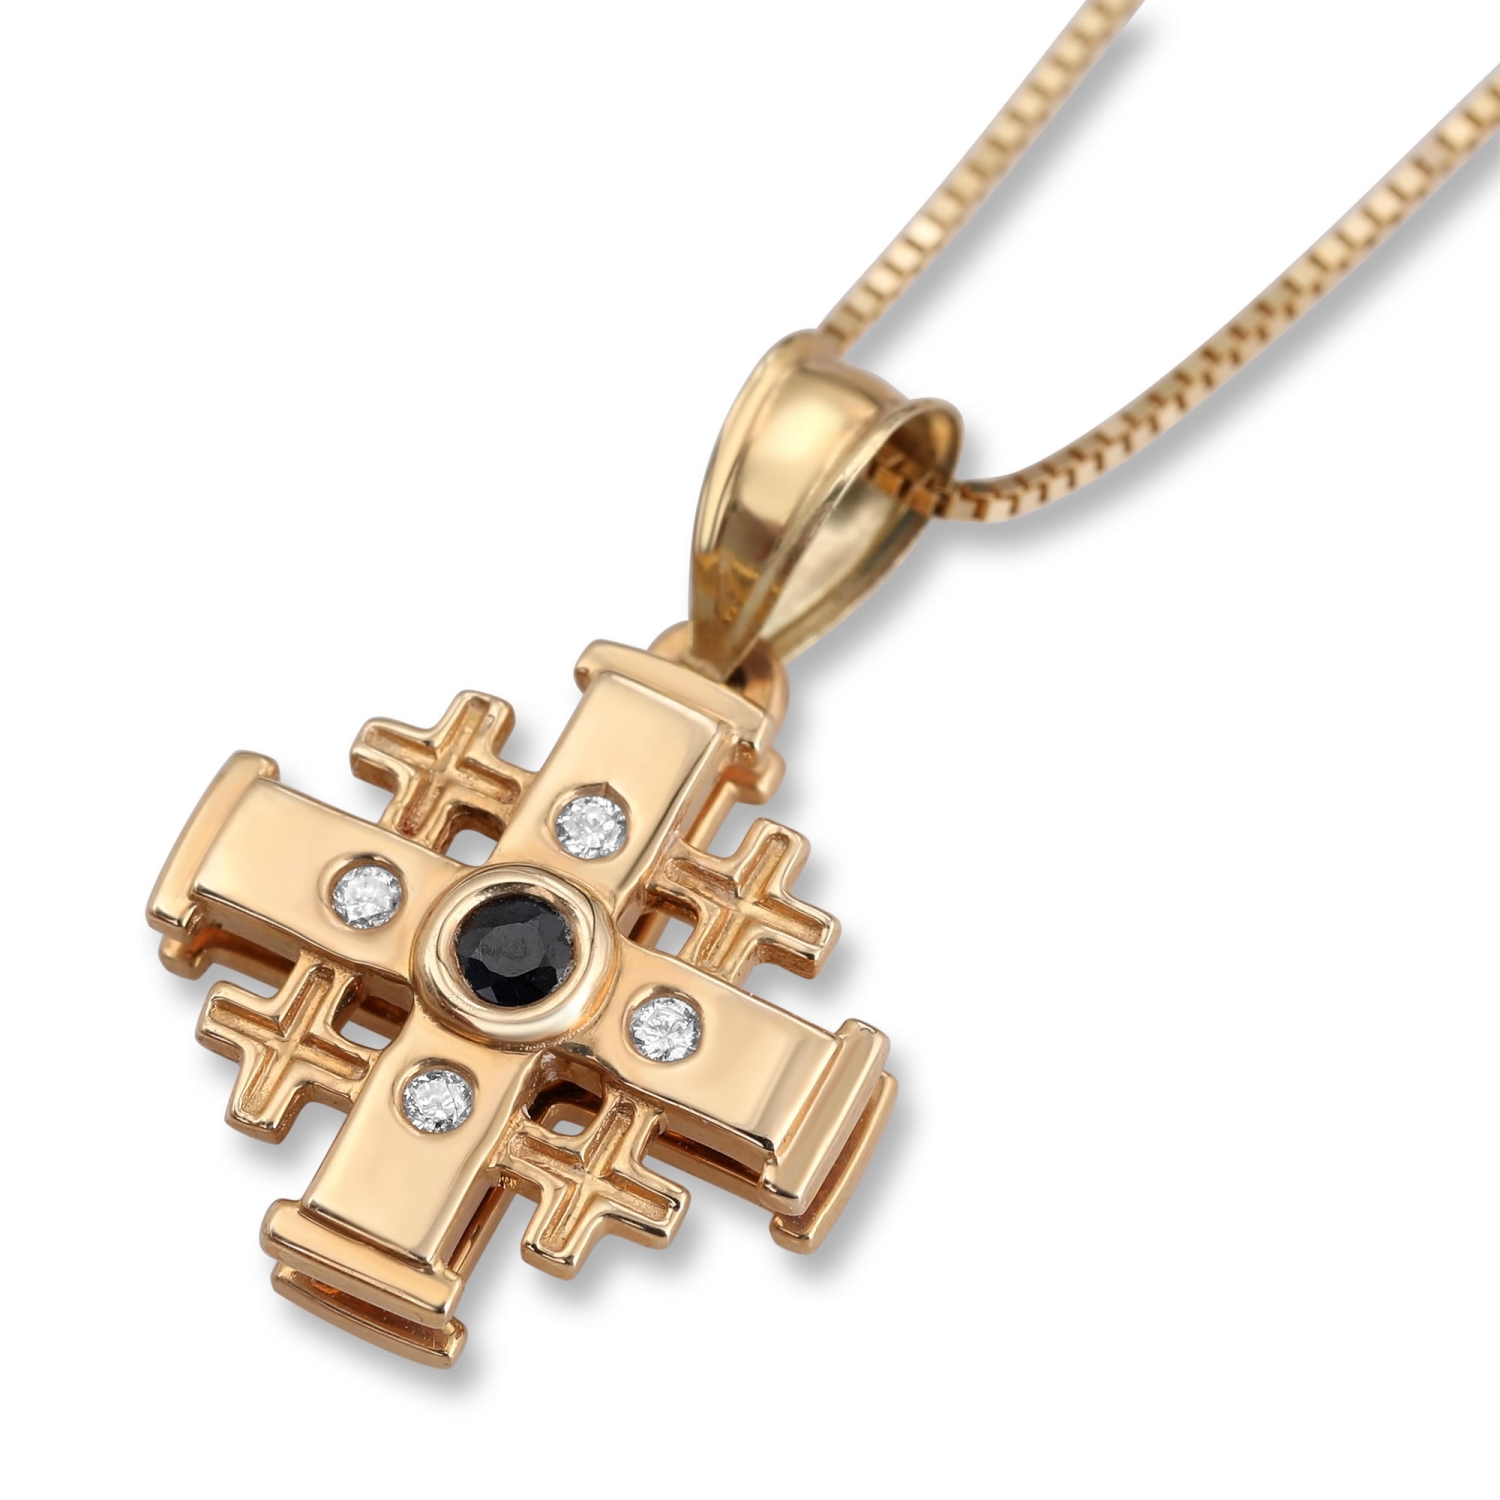 14K Gold Jerusalem Cross Necklace with Five White and Black Diamonds and ‘Jerusalem’ Inscription - 1